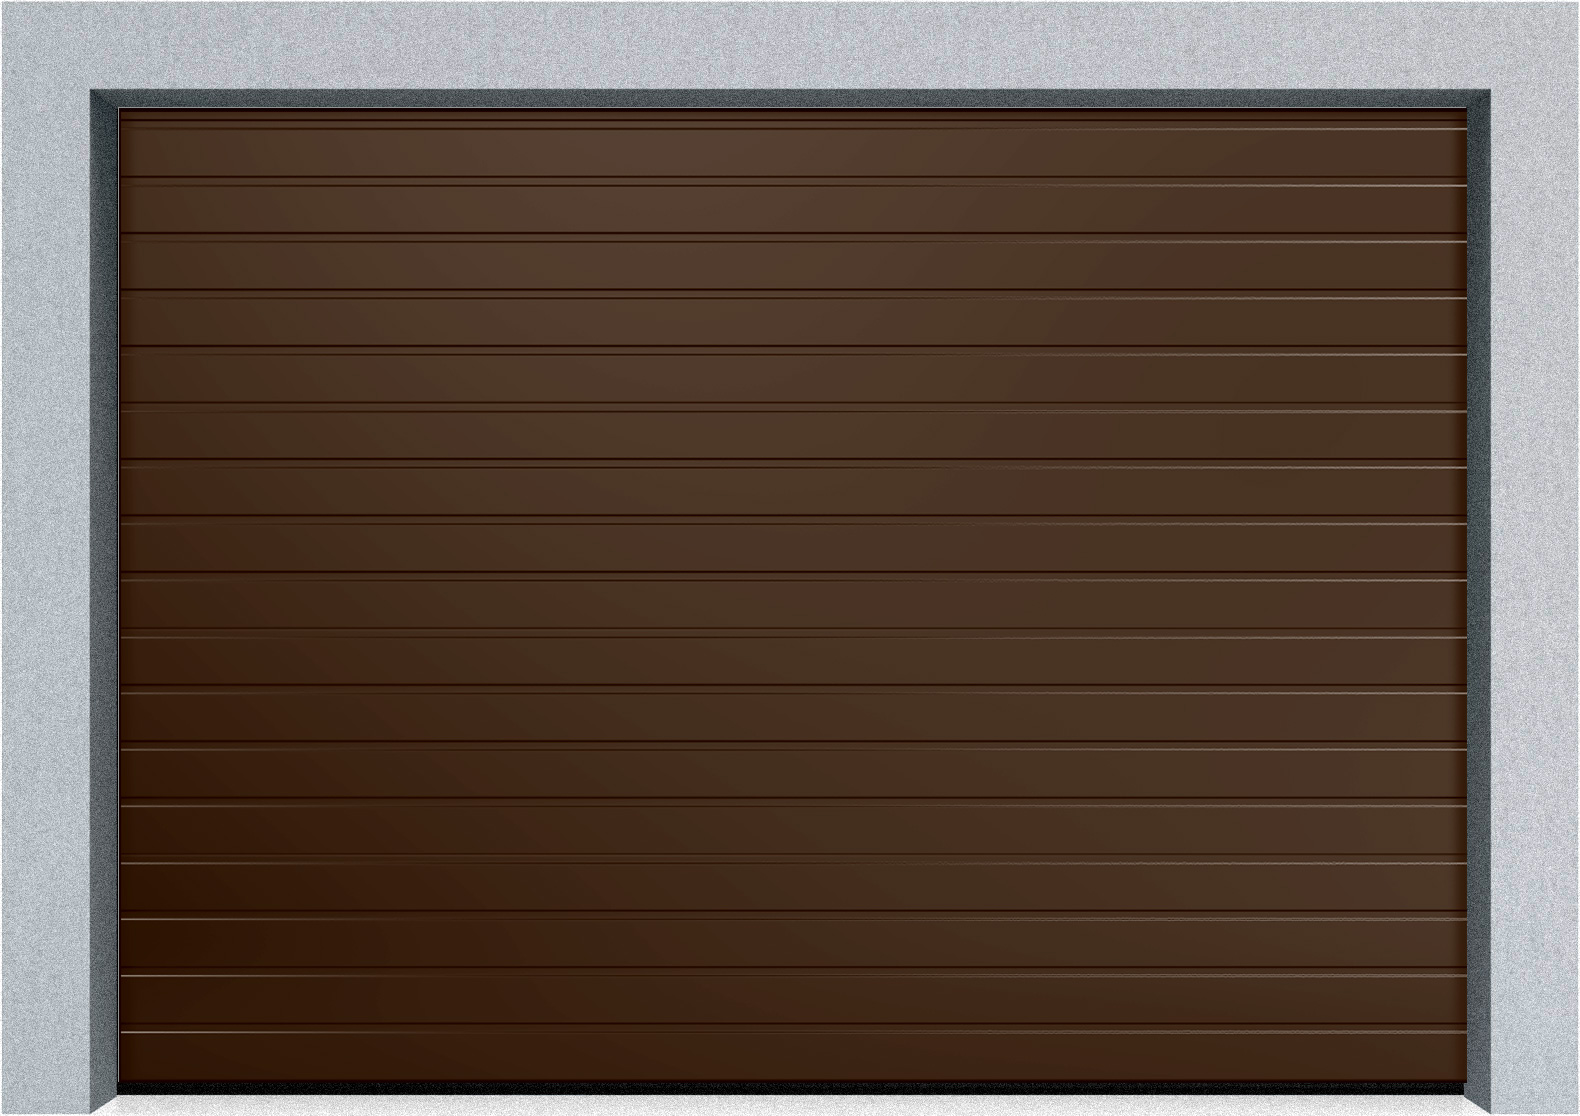  Секционные промышленные ворота DoorHan ISD ThermalPro 2100x4500 S-гофр, M-гофр, Микроволна стандартные цвета, фото 2 